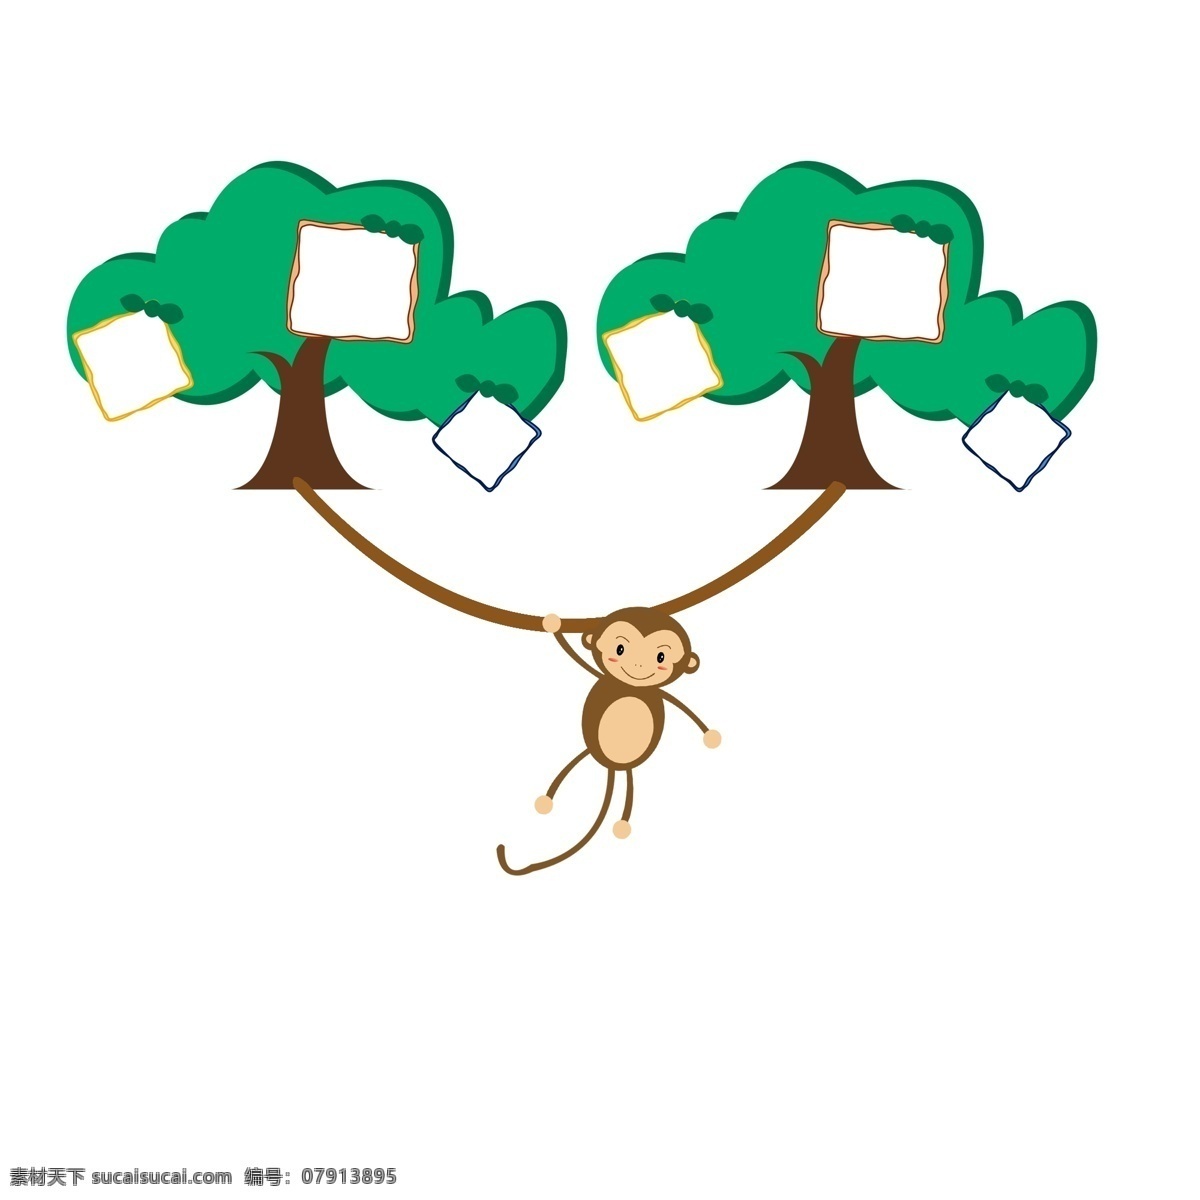 树木 相框 卡通 插画 绿色的相框 卡通插画 相框插画 框架 框子 框框 简易相框 高大的树木